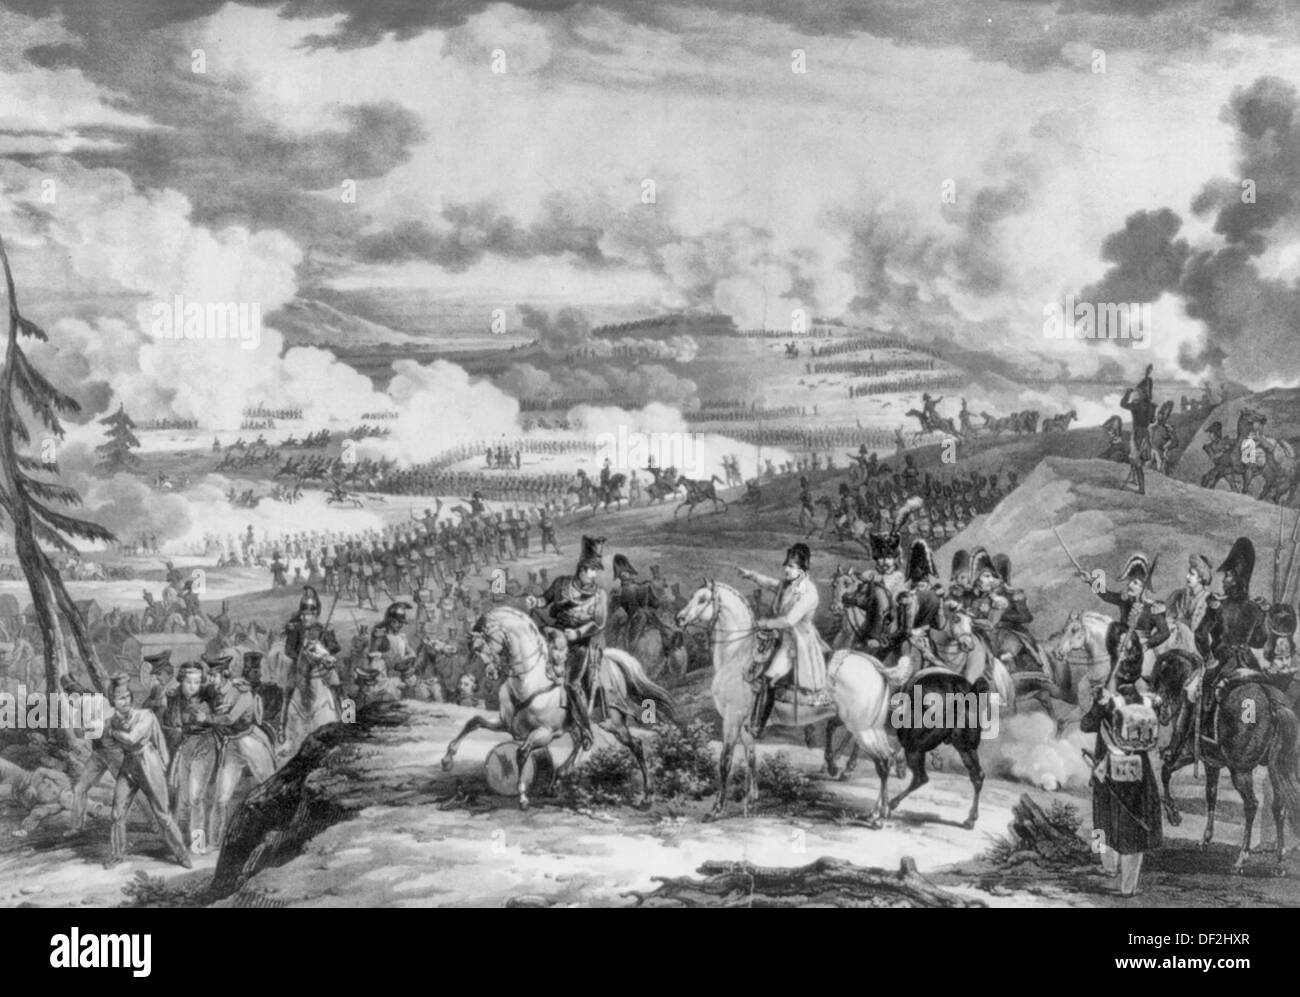 Bataille De La Moscowa, Schlacht um Moskau, 1812 - Napoleon ich Invasion Russlands Stockfoto